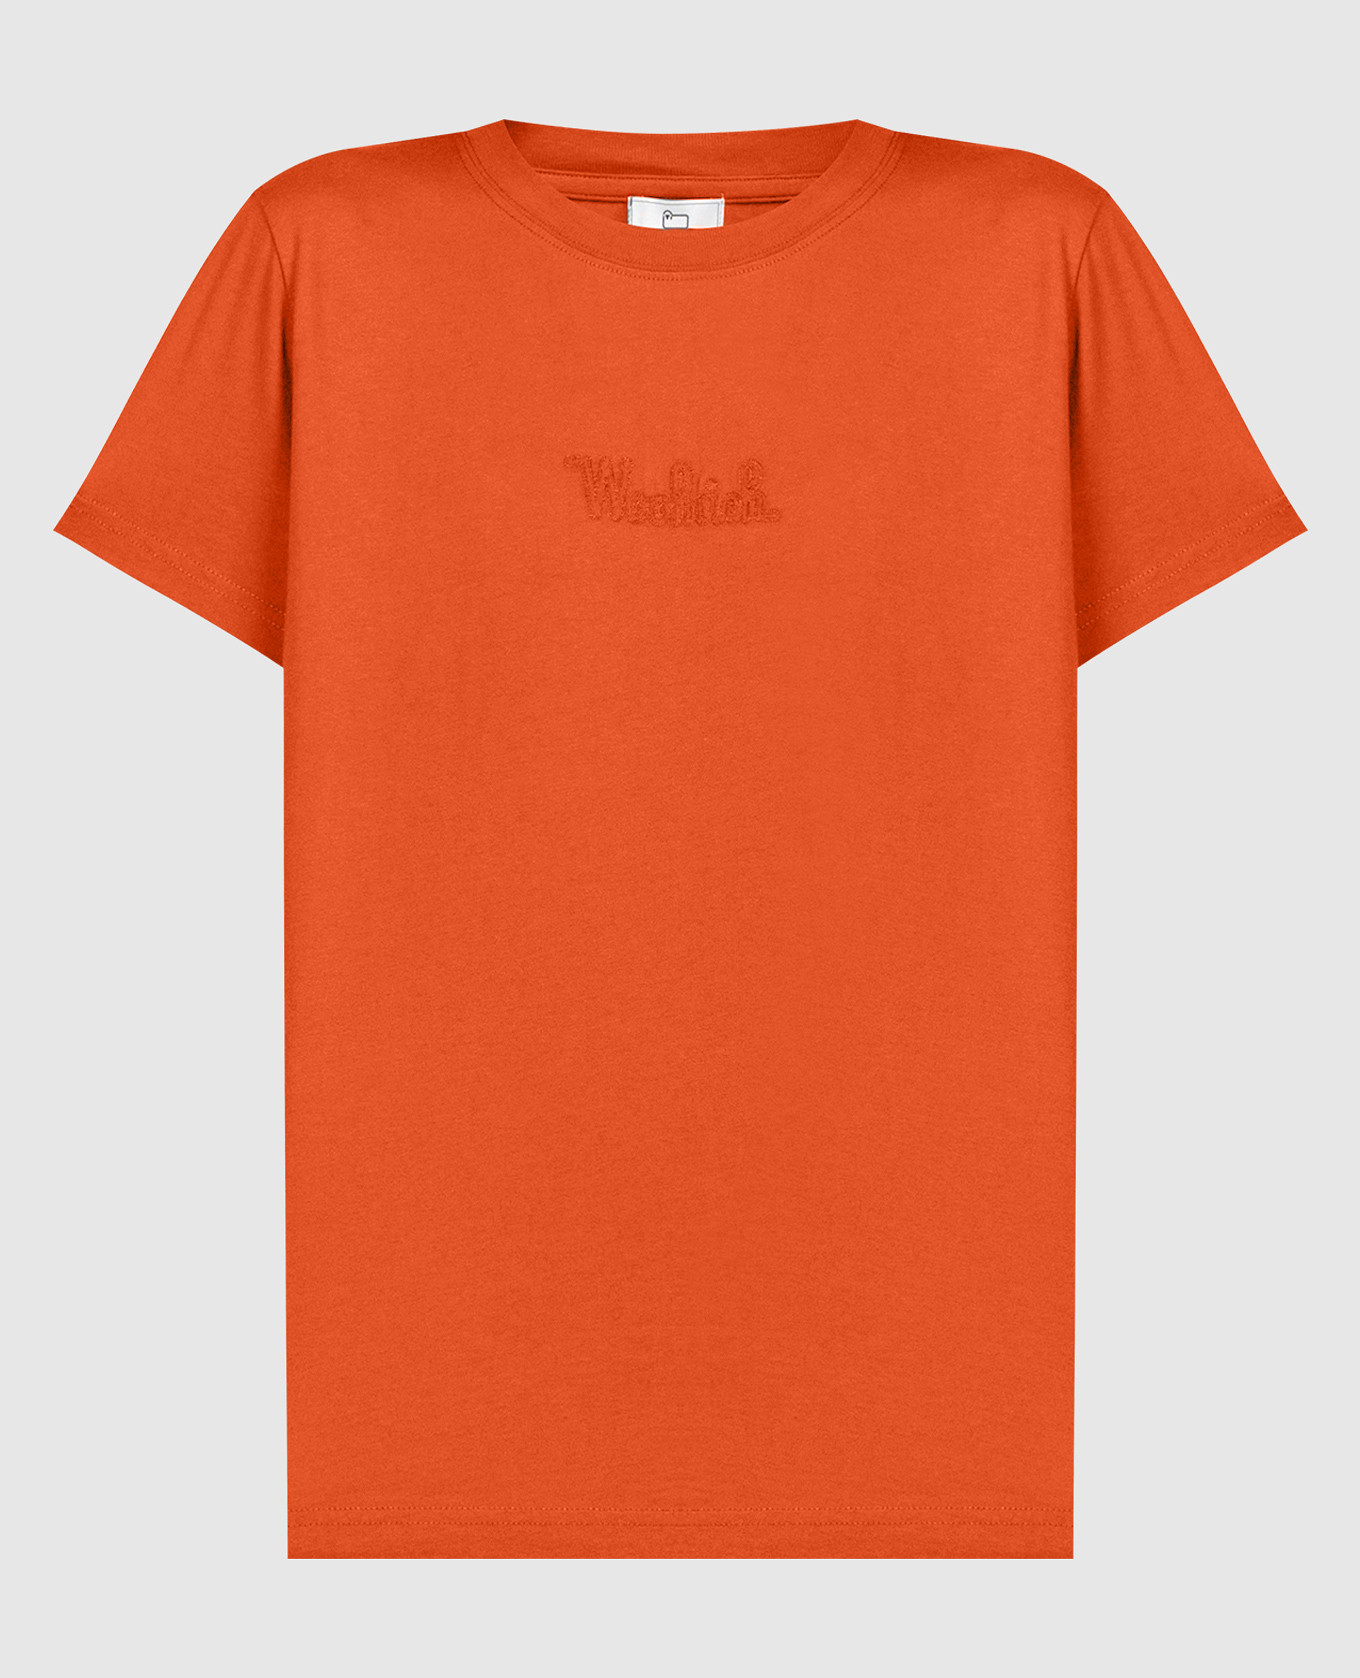 Оранжевая футболка с вышивкой логотипа